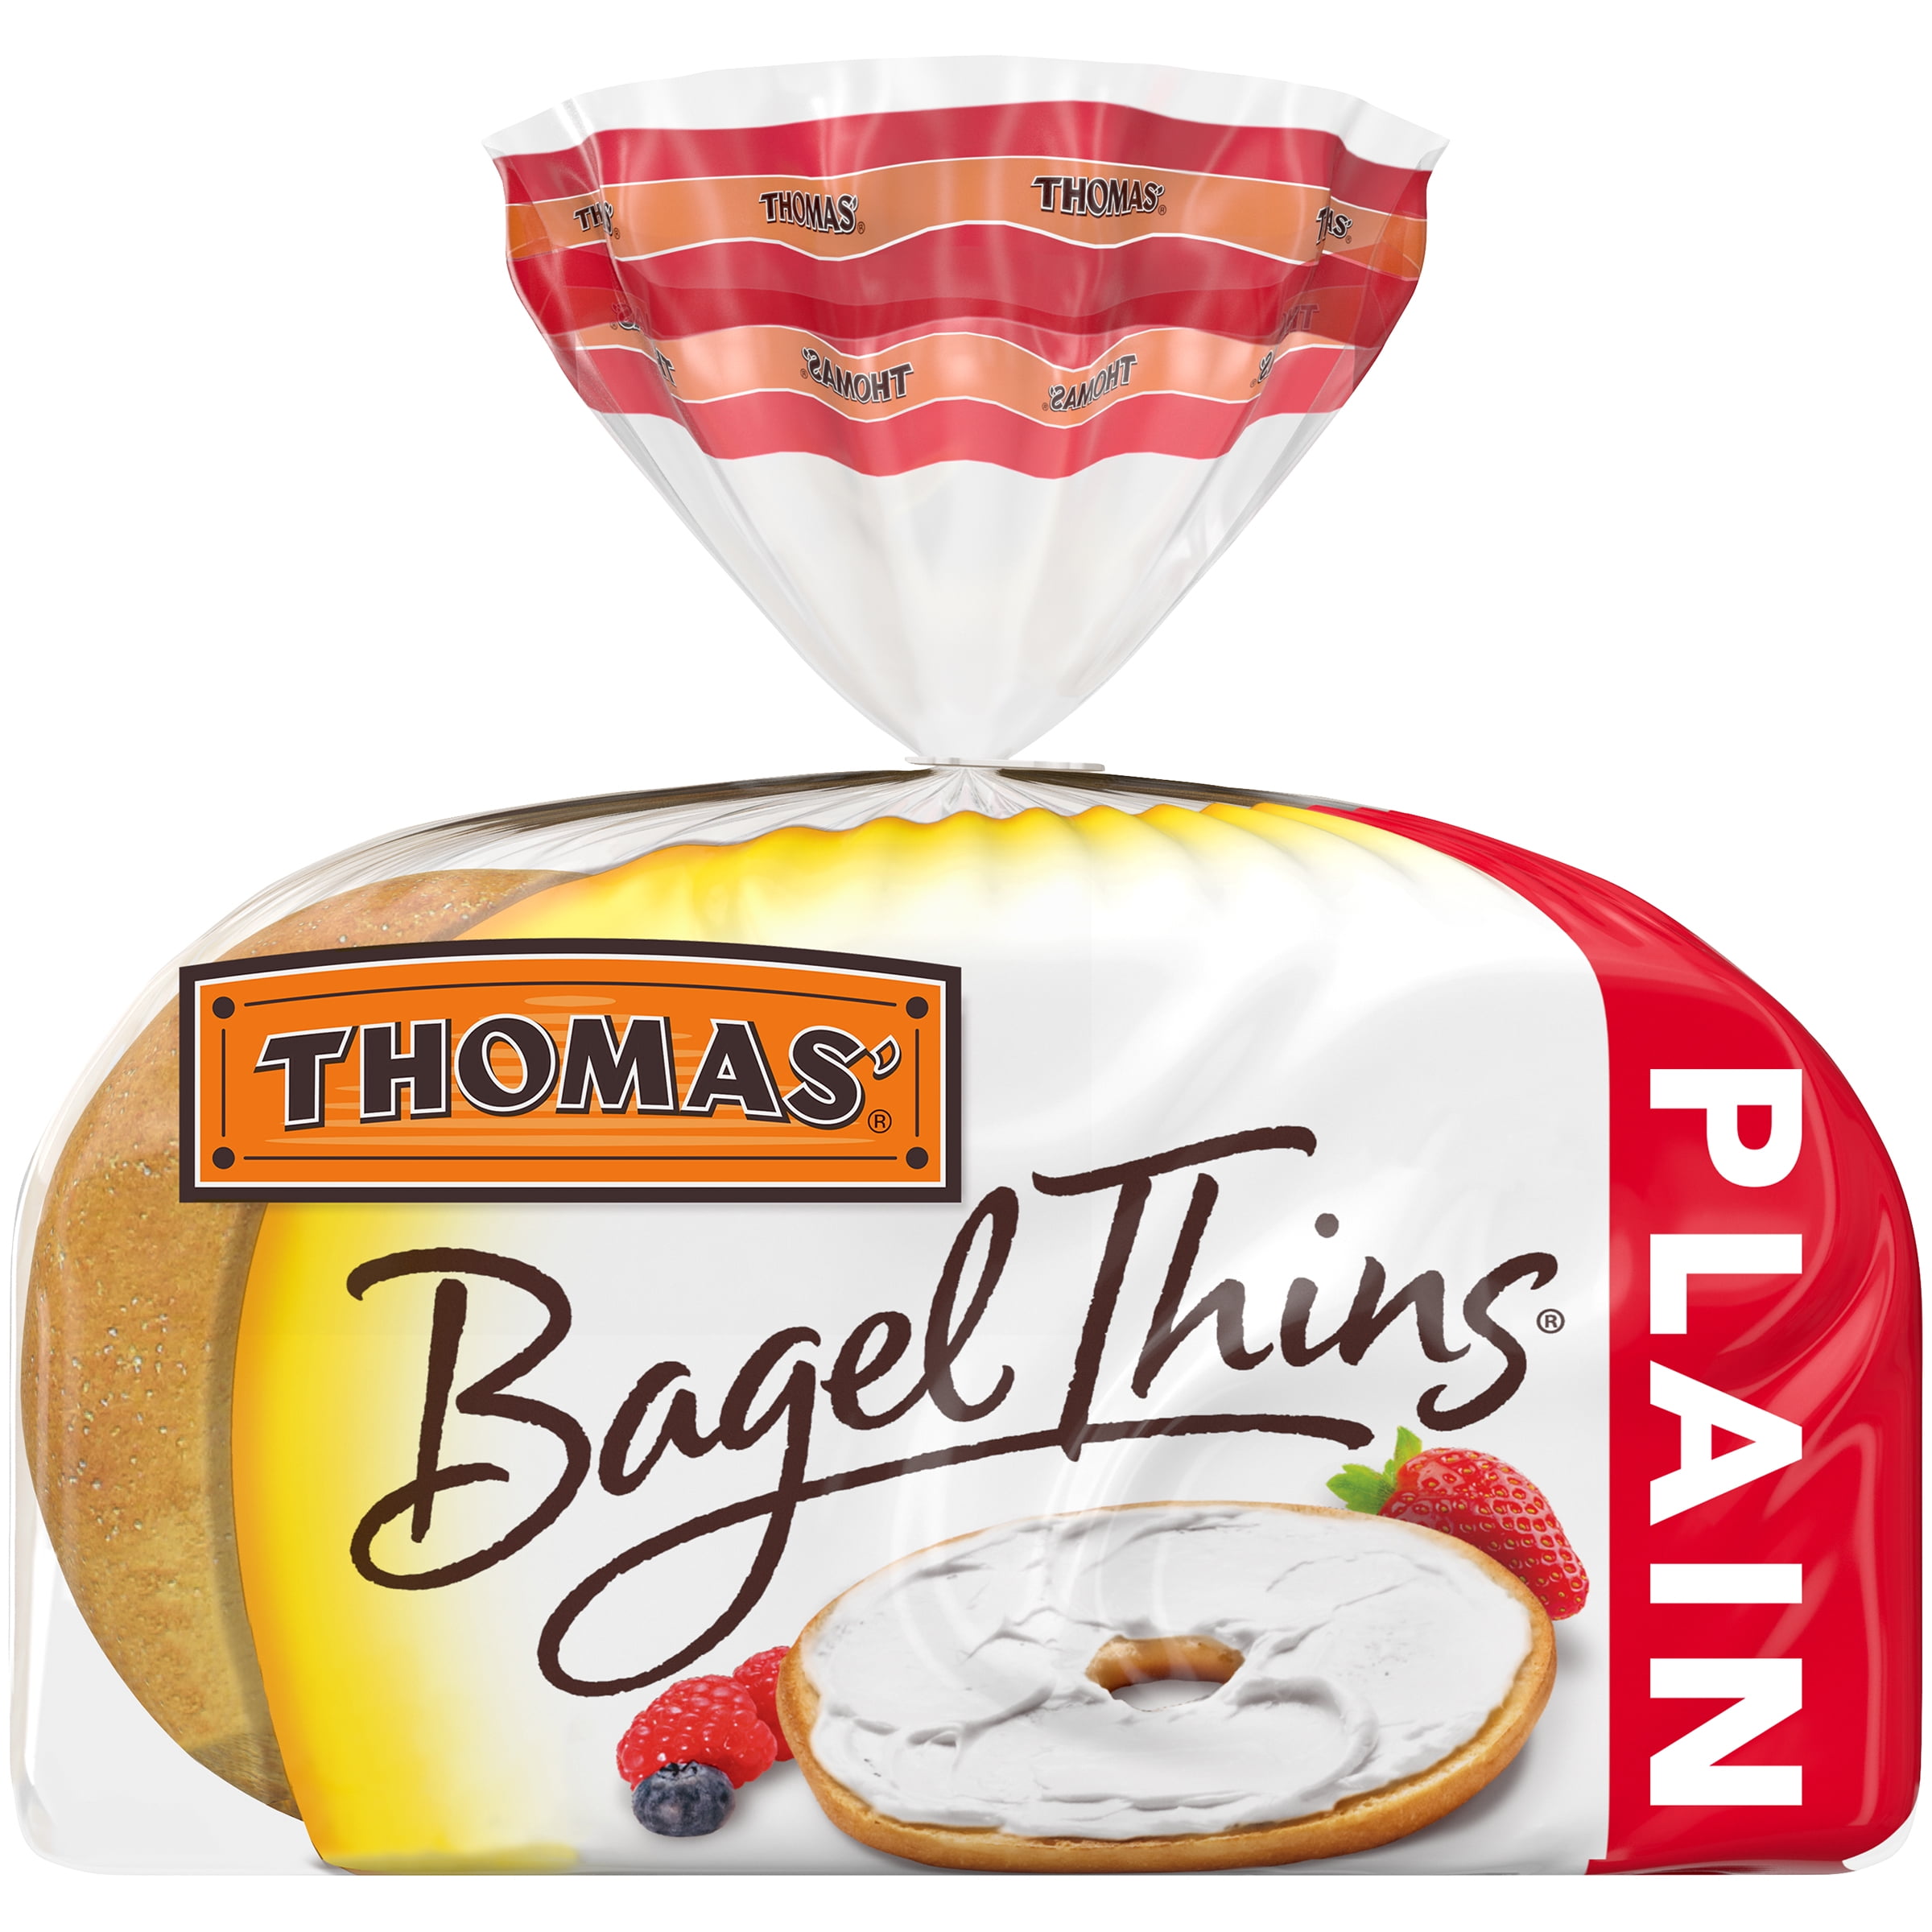 Thomas' Plain Bagel Thins, 8 Pre-Sliced Bagels, 13 Oz